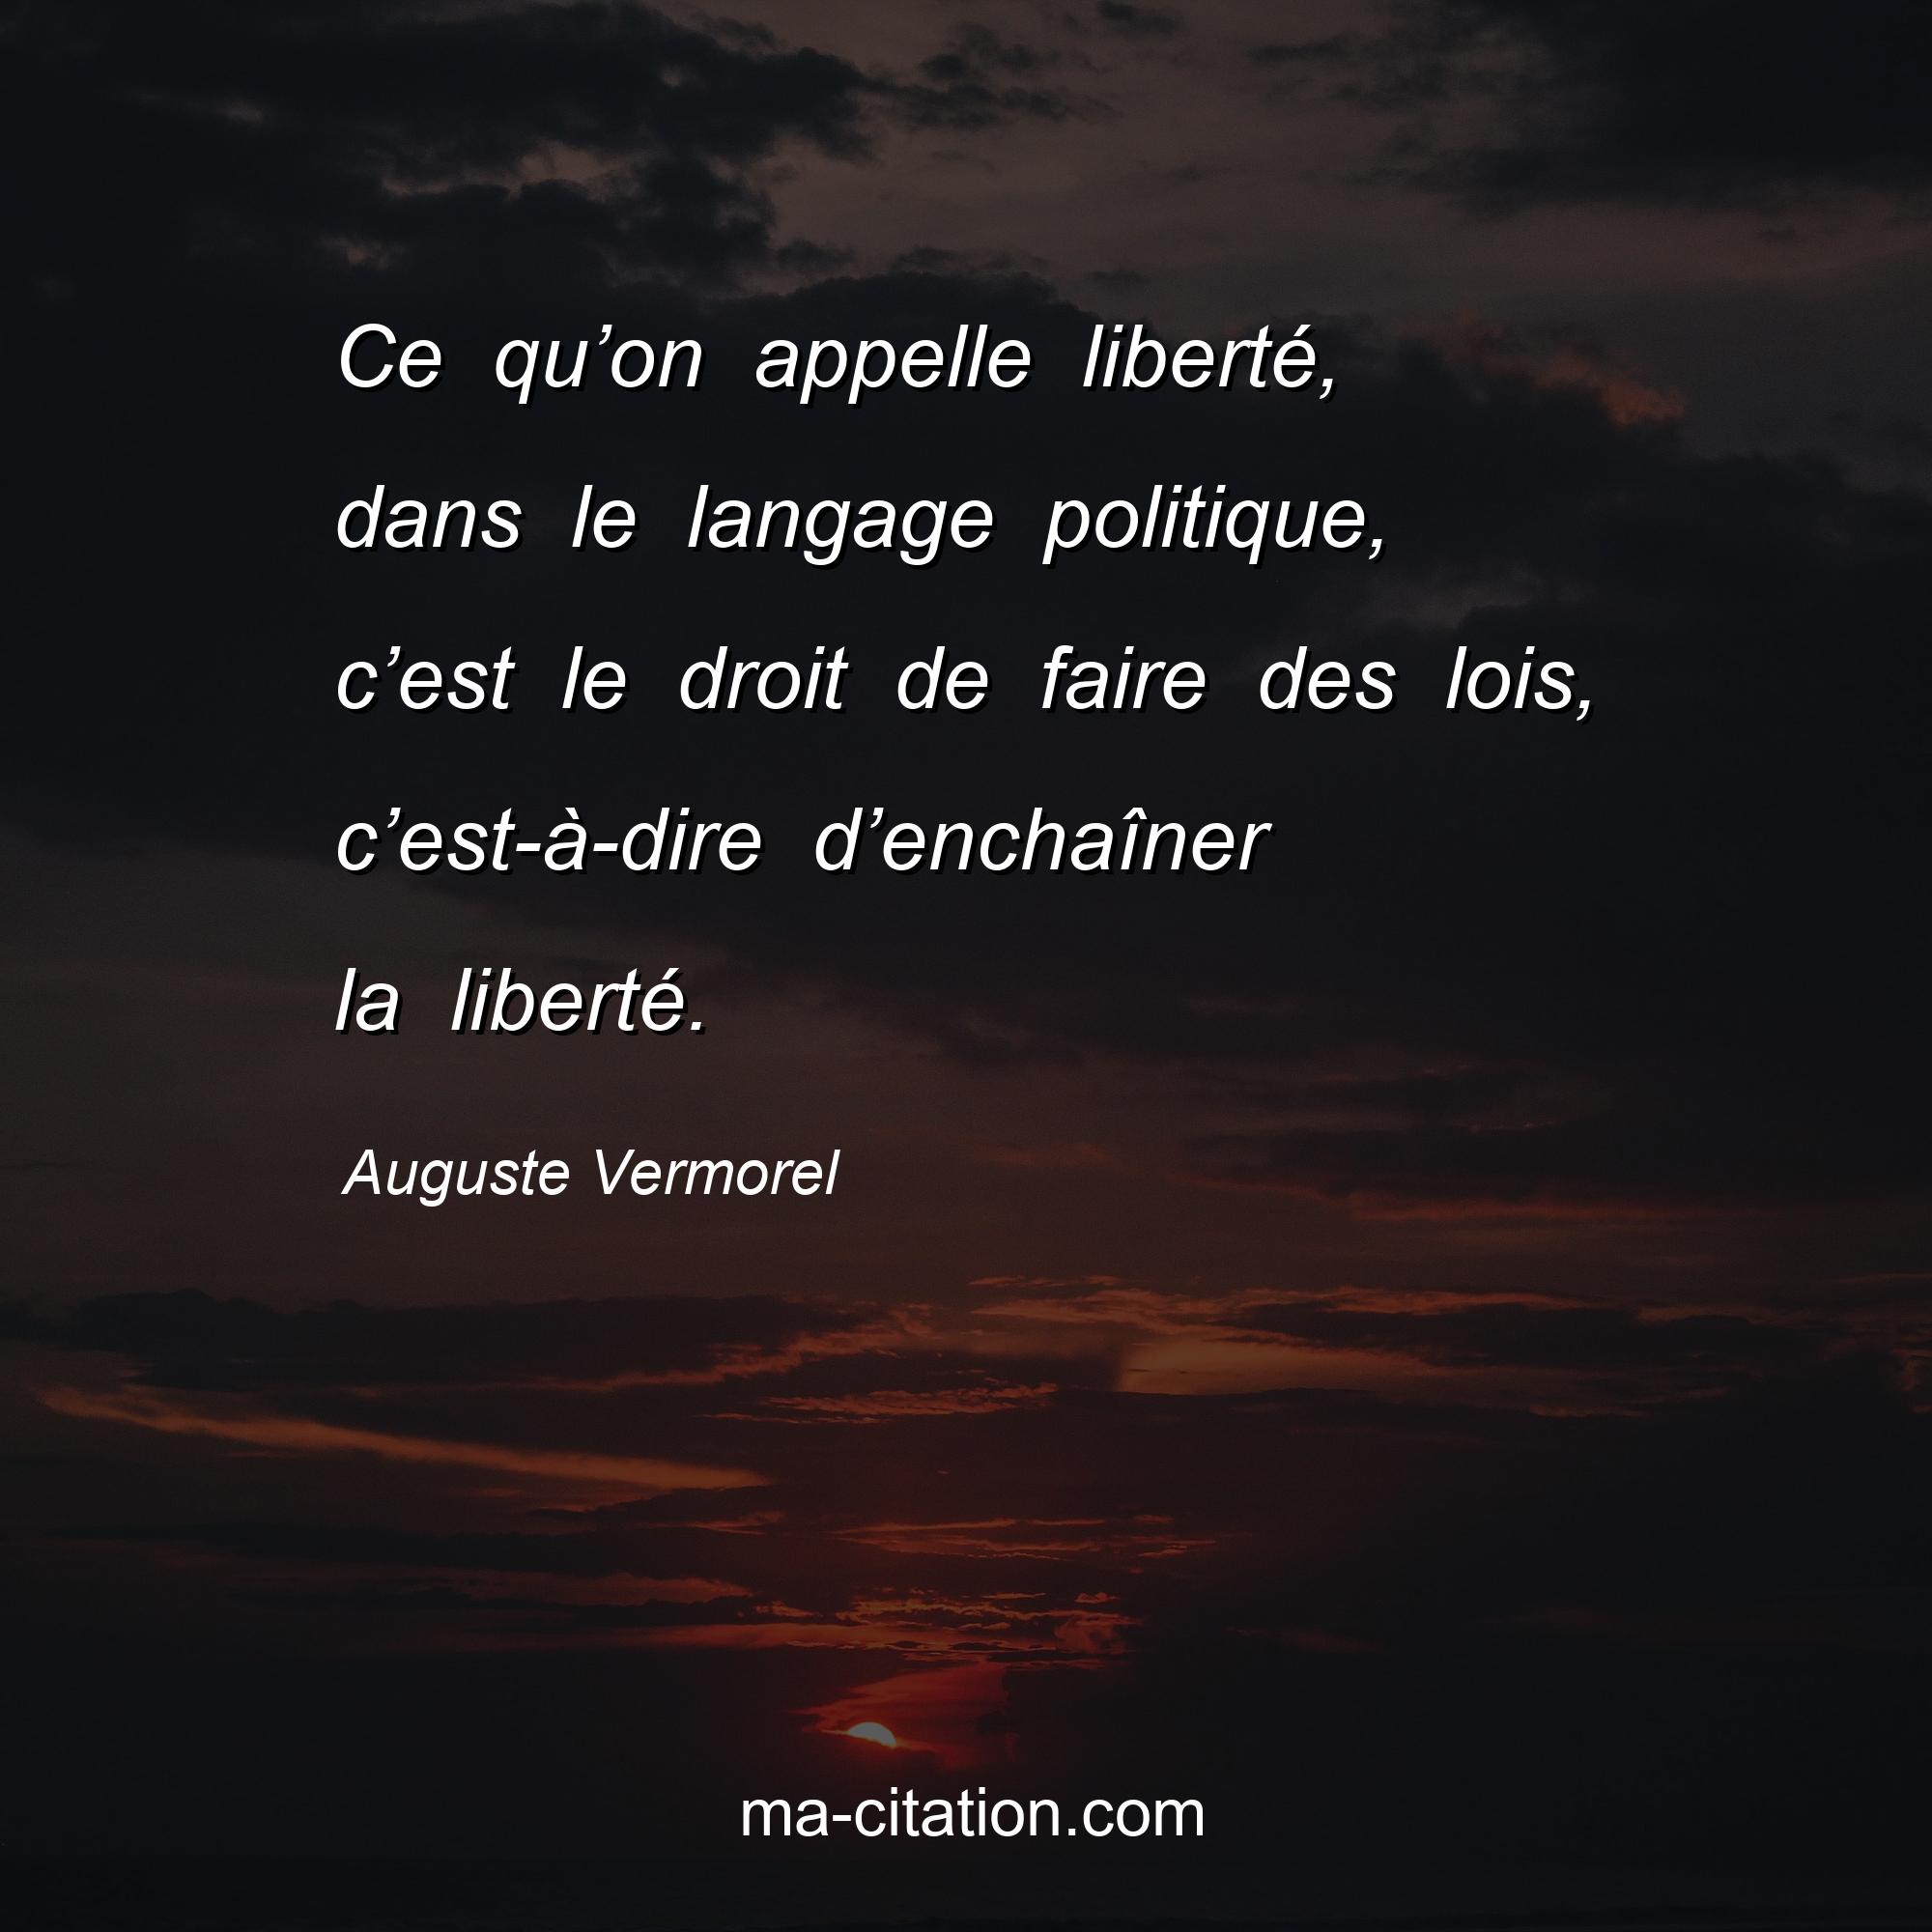 Auguste Vermorel : Ce qu’on appelle liberté, dans le langage politique, c’est le droit de faire des lois, c’est-à-dire d’enchaîner la liberté.